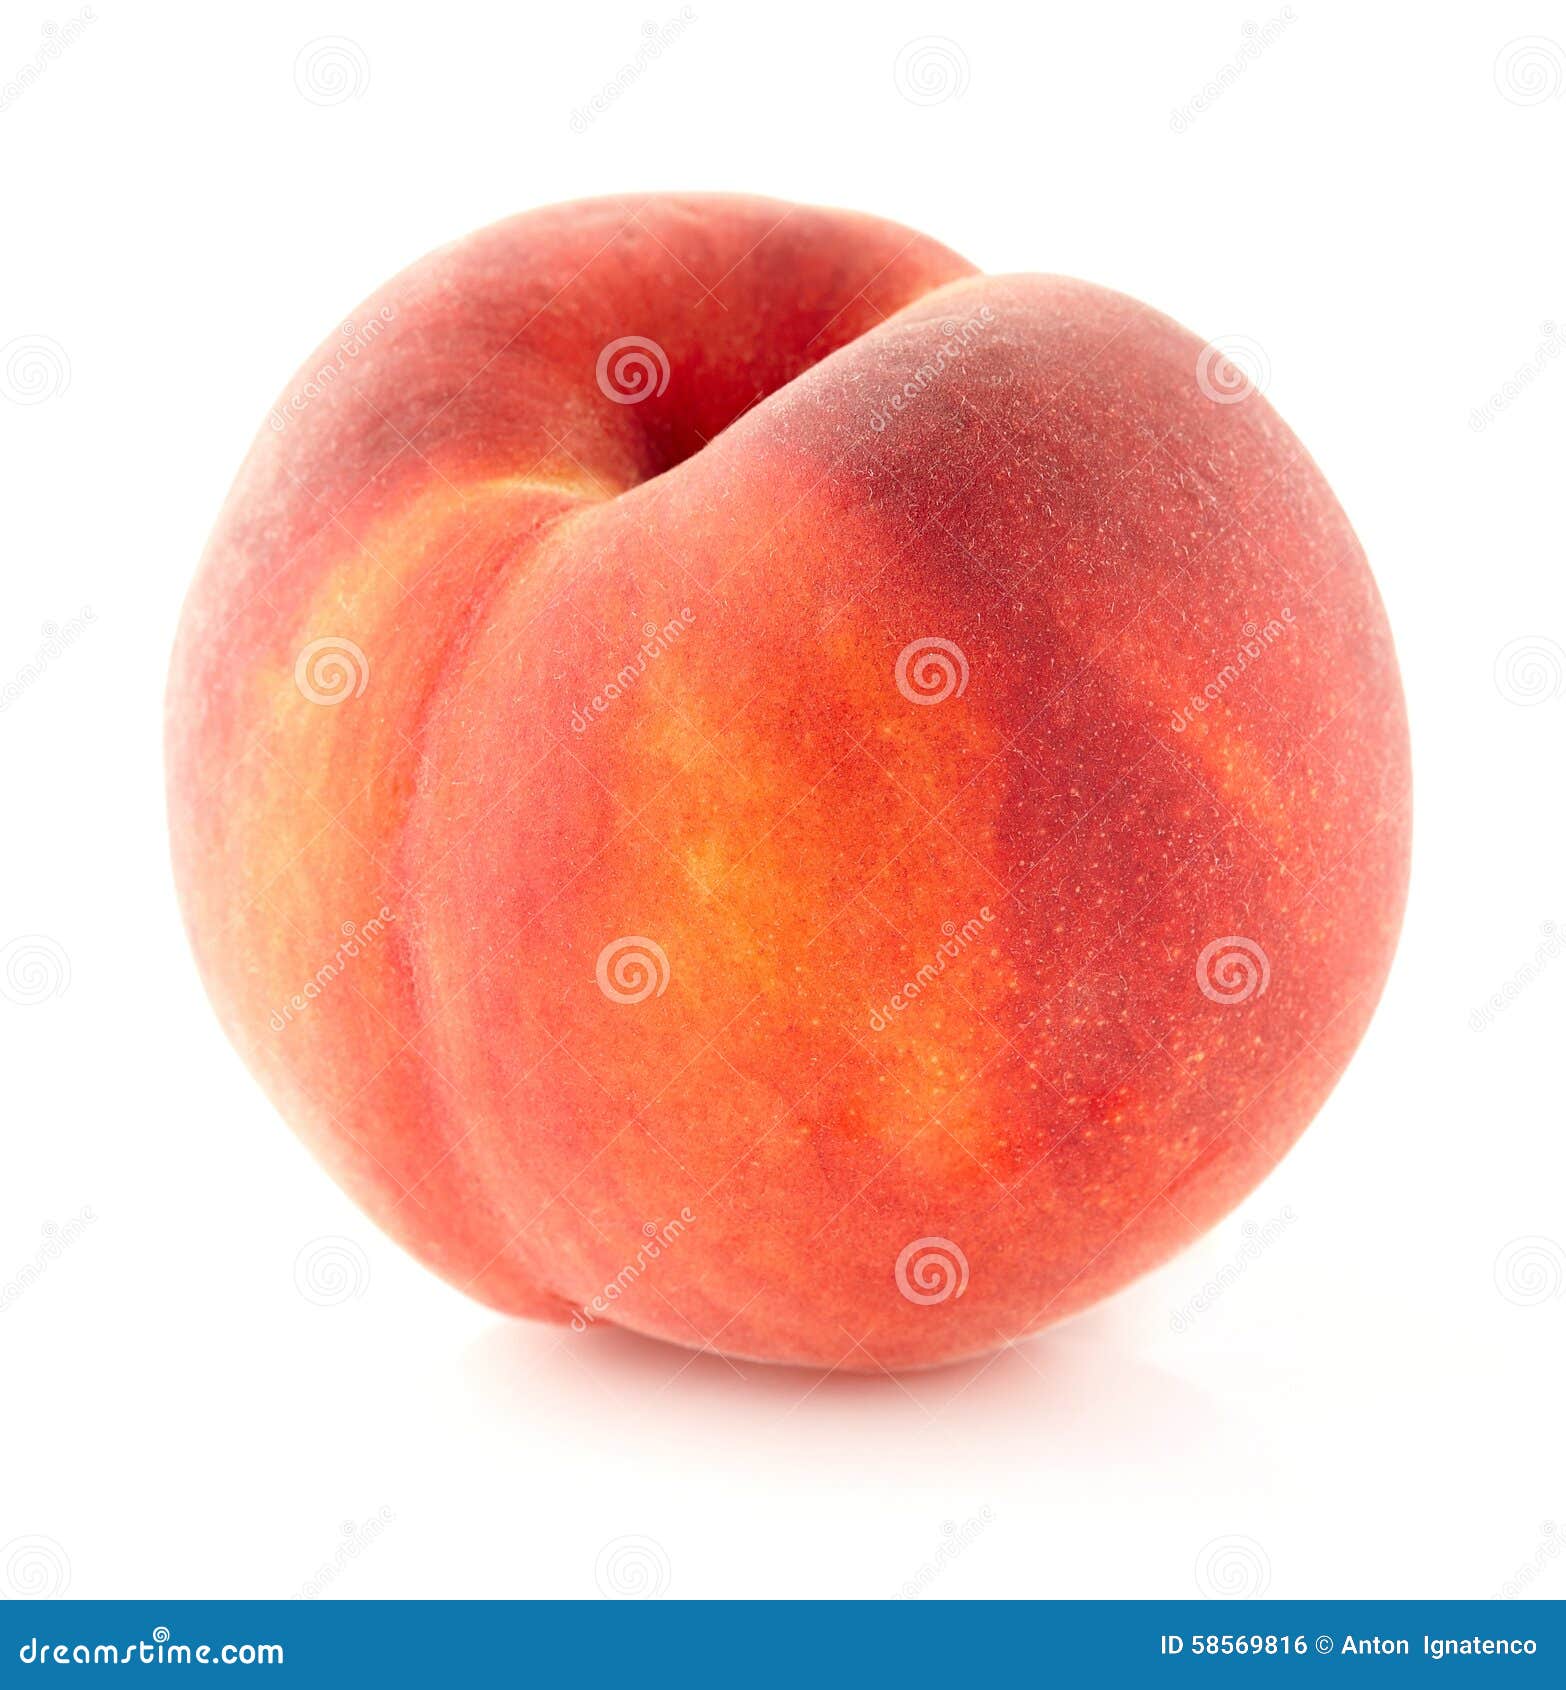 one peach